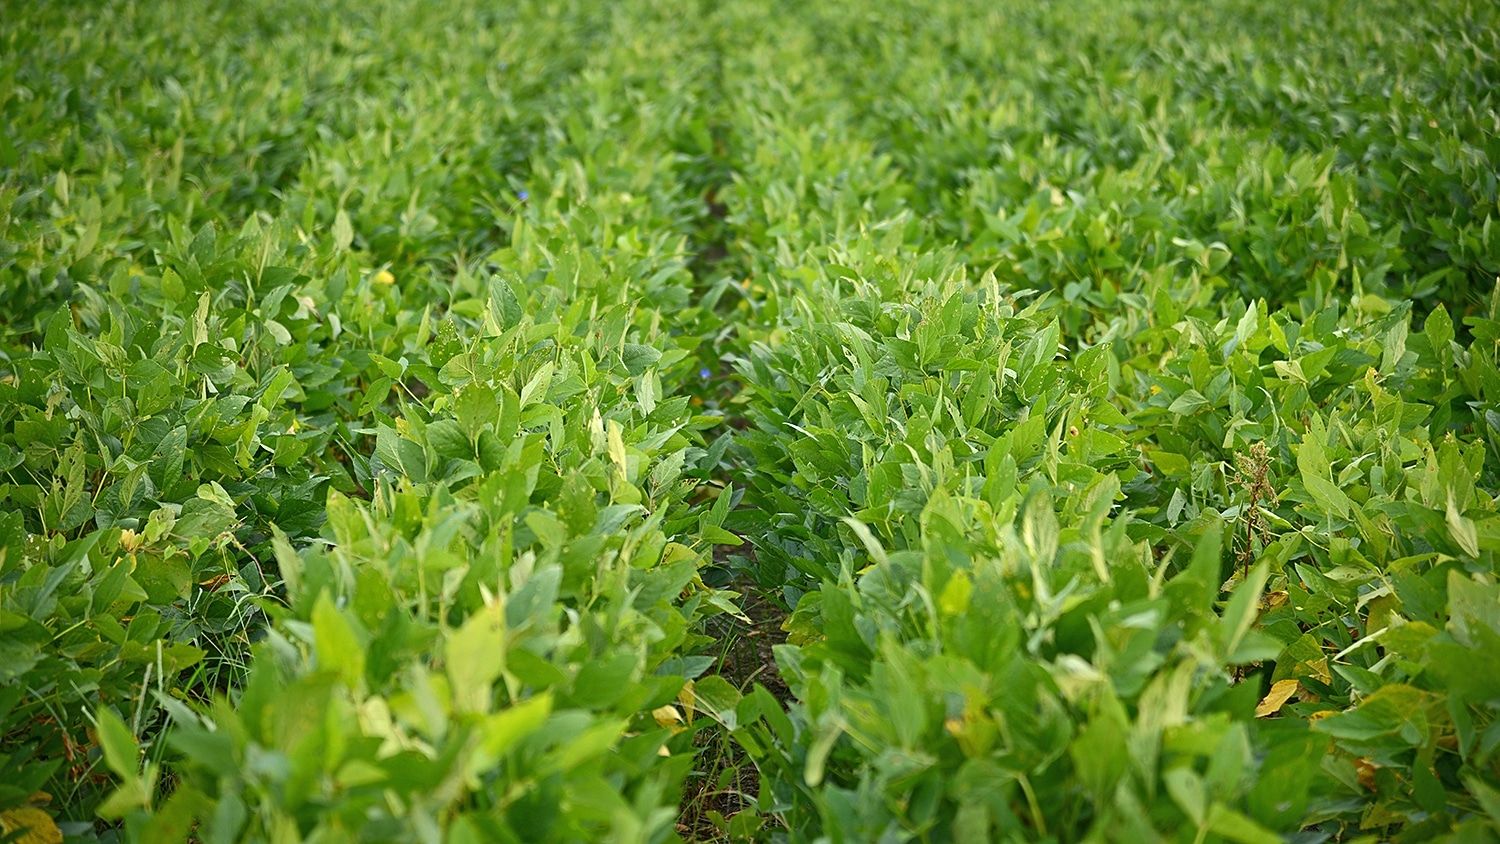 Soybean plants in the field.